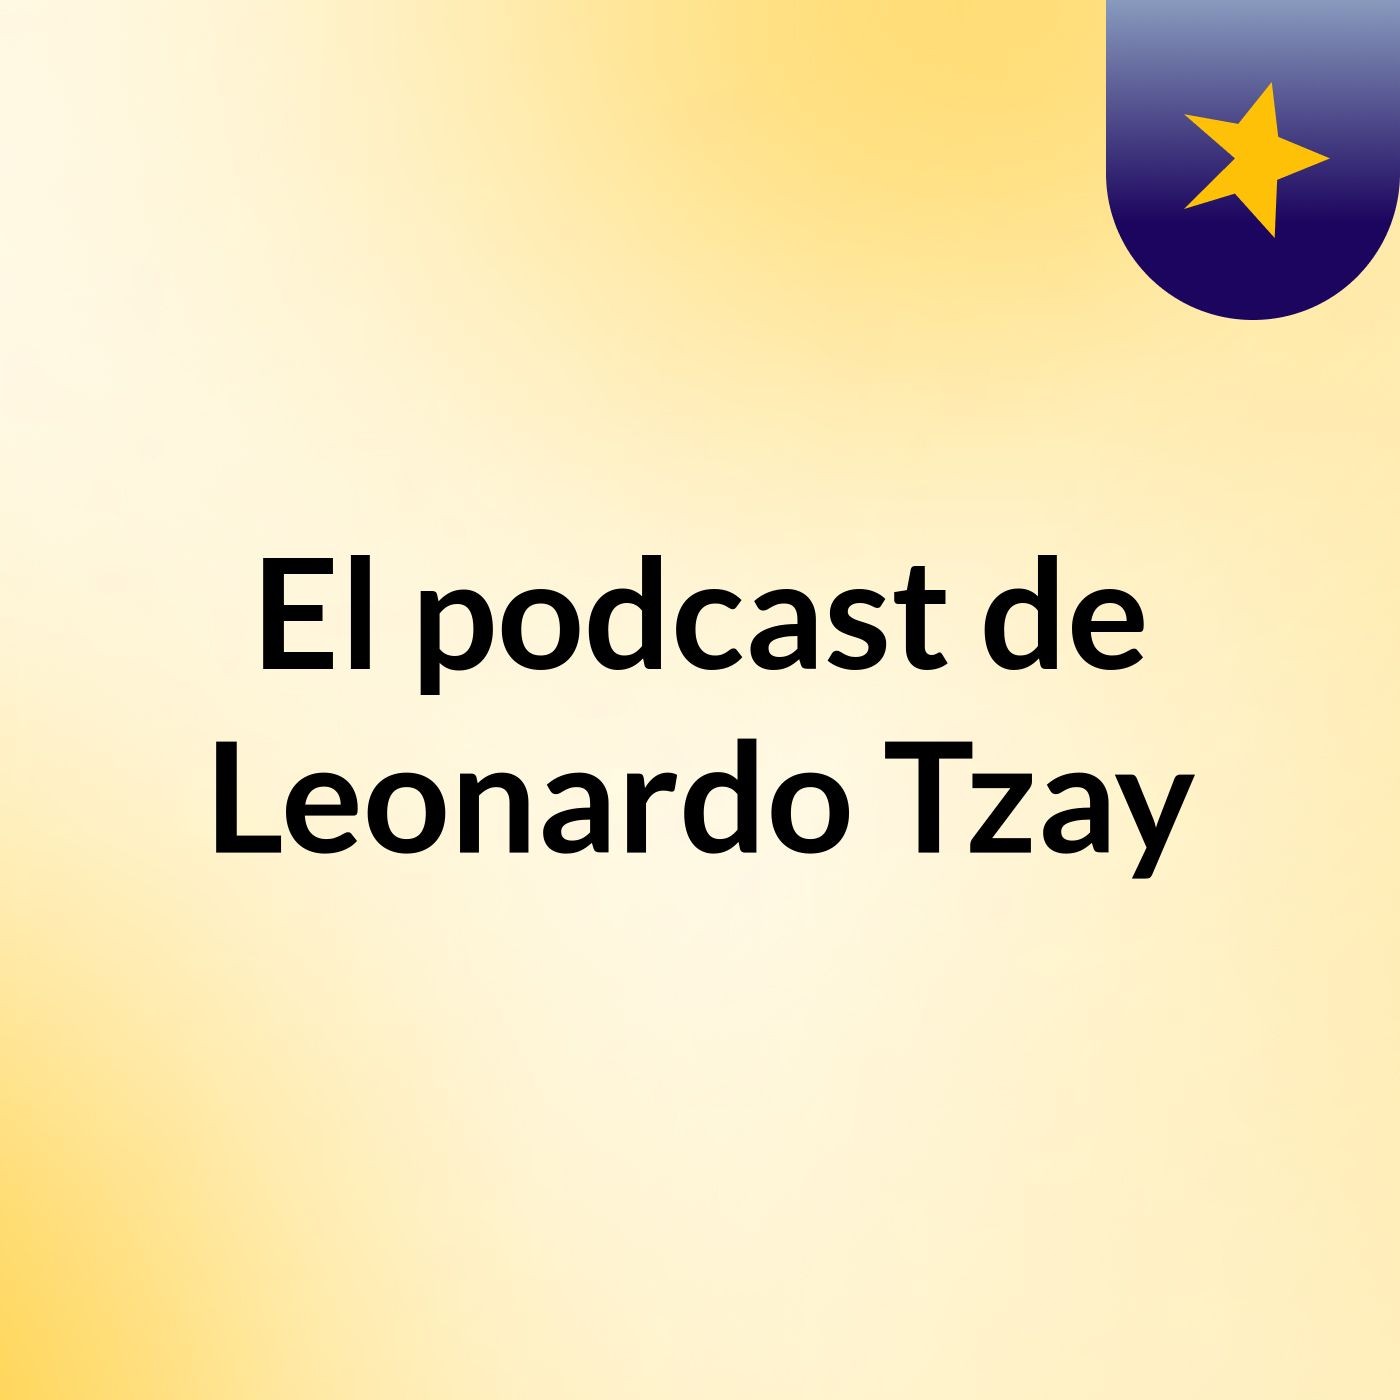 El podcast de Leonardo Tzay